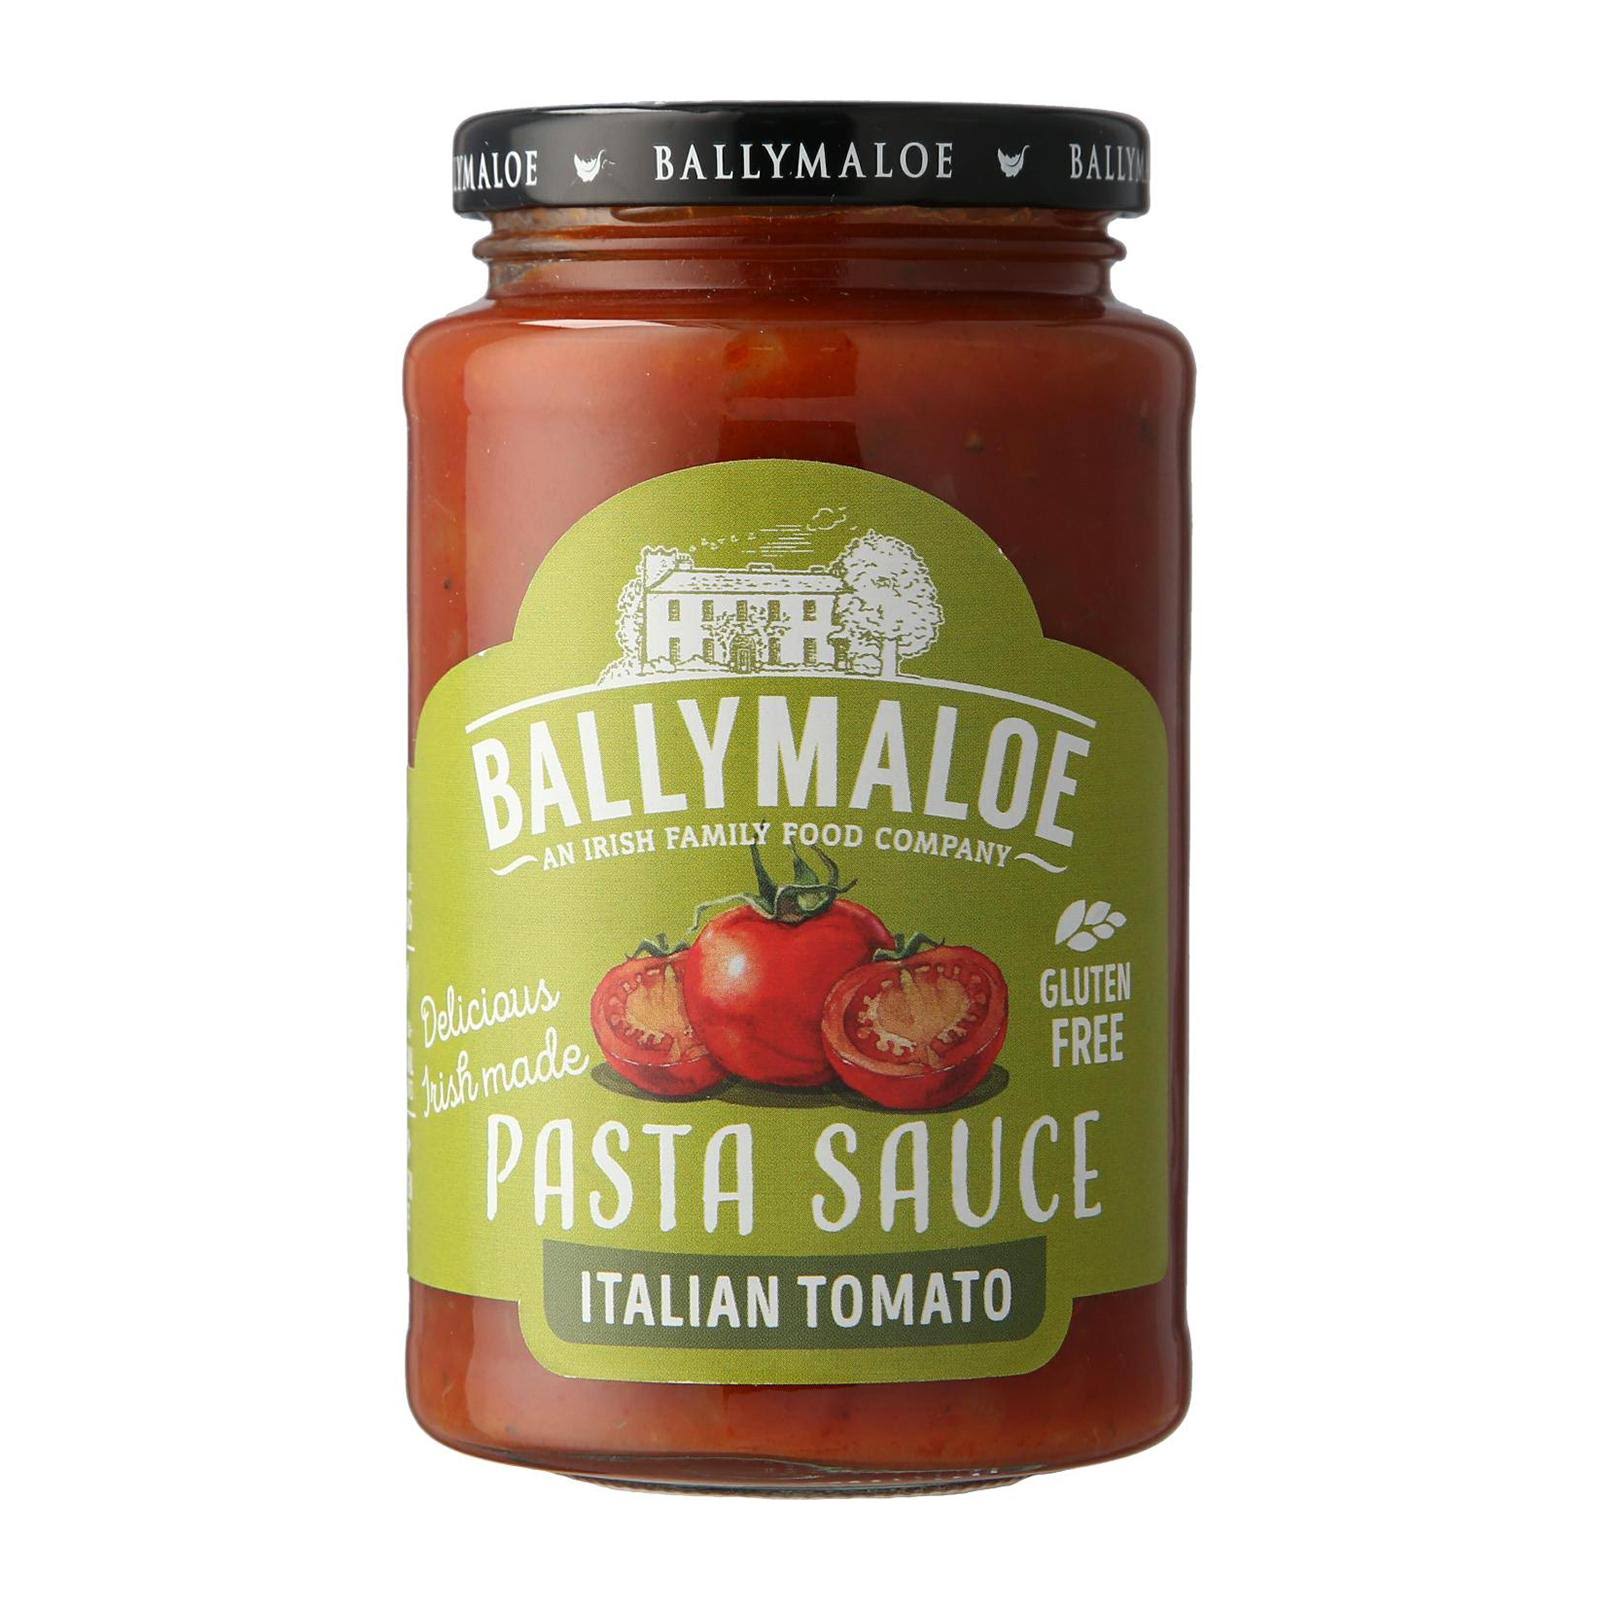 Ballymaloe Pasta Sauce - Italian Tomato, 400g